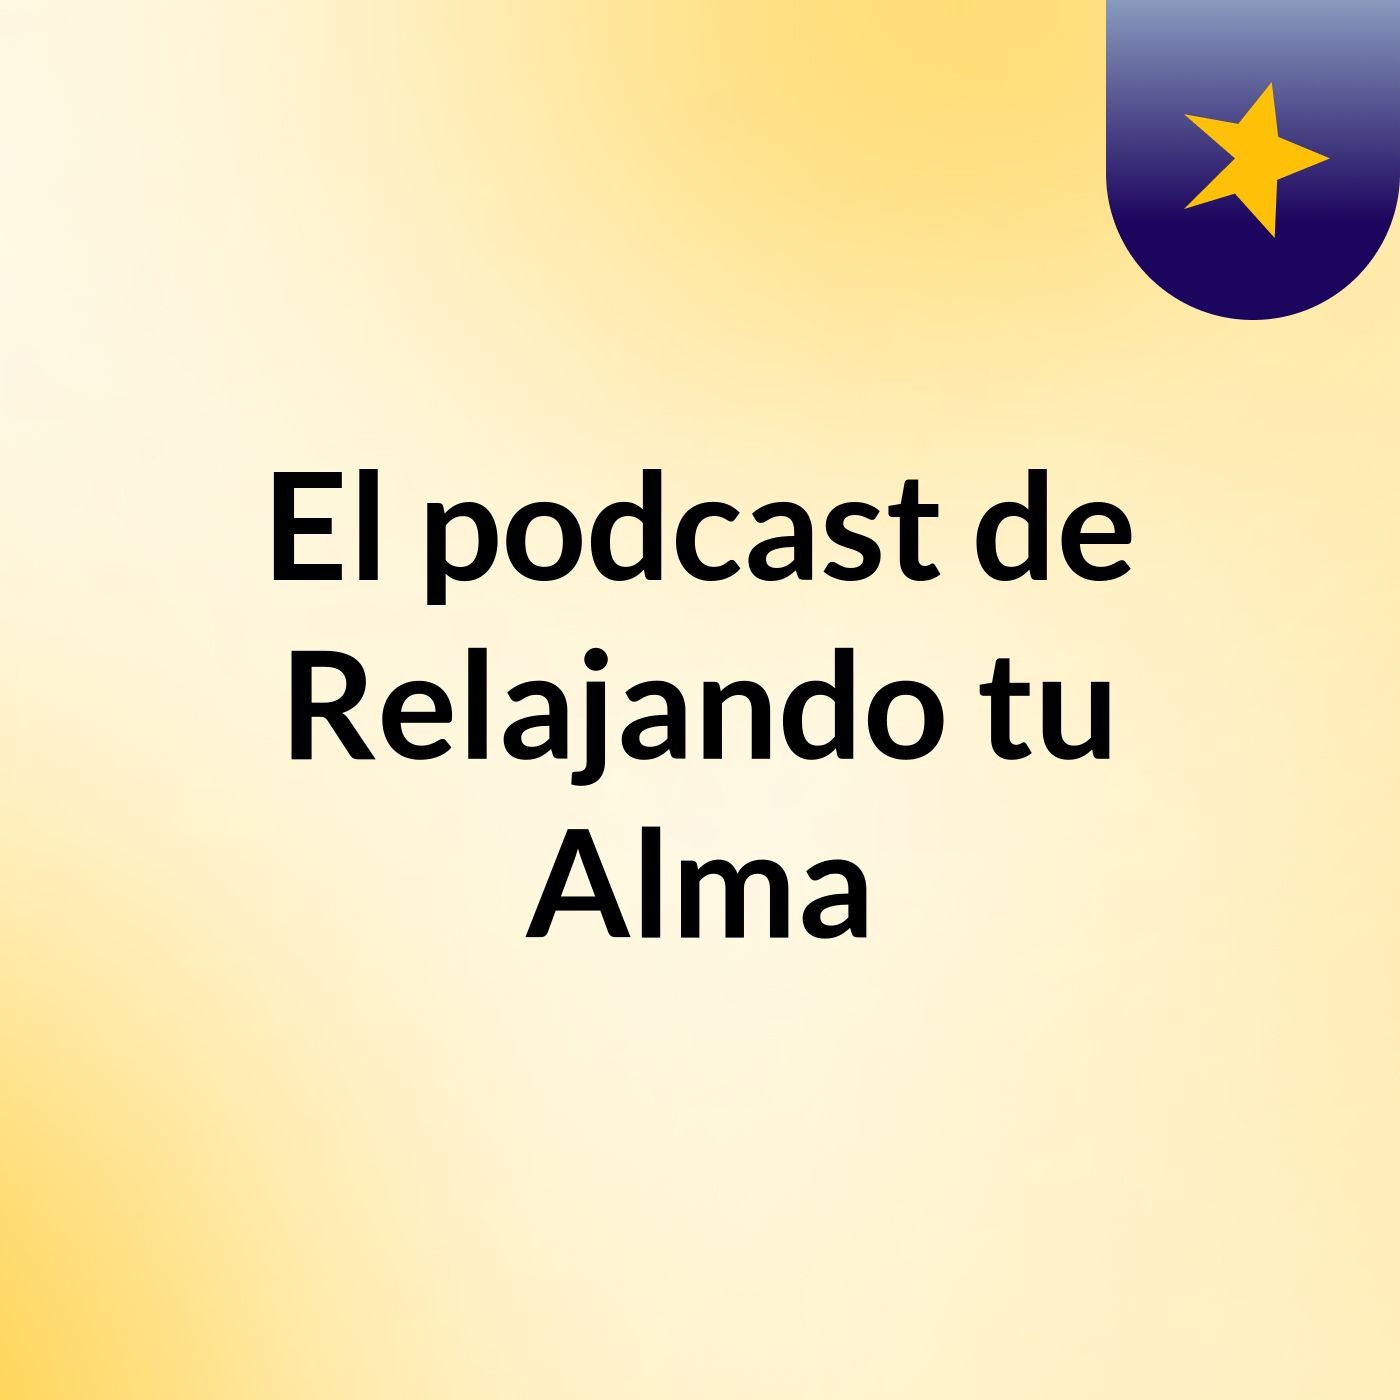 El podcast de Relajando tu Alma